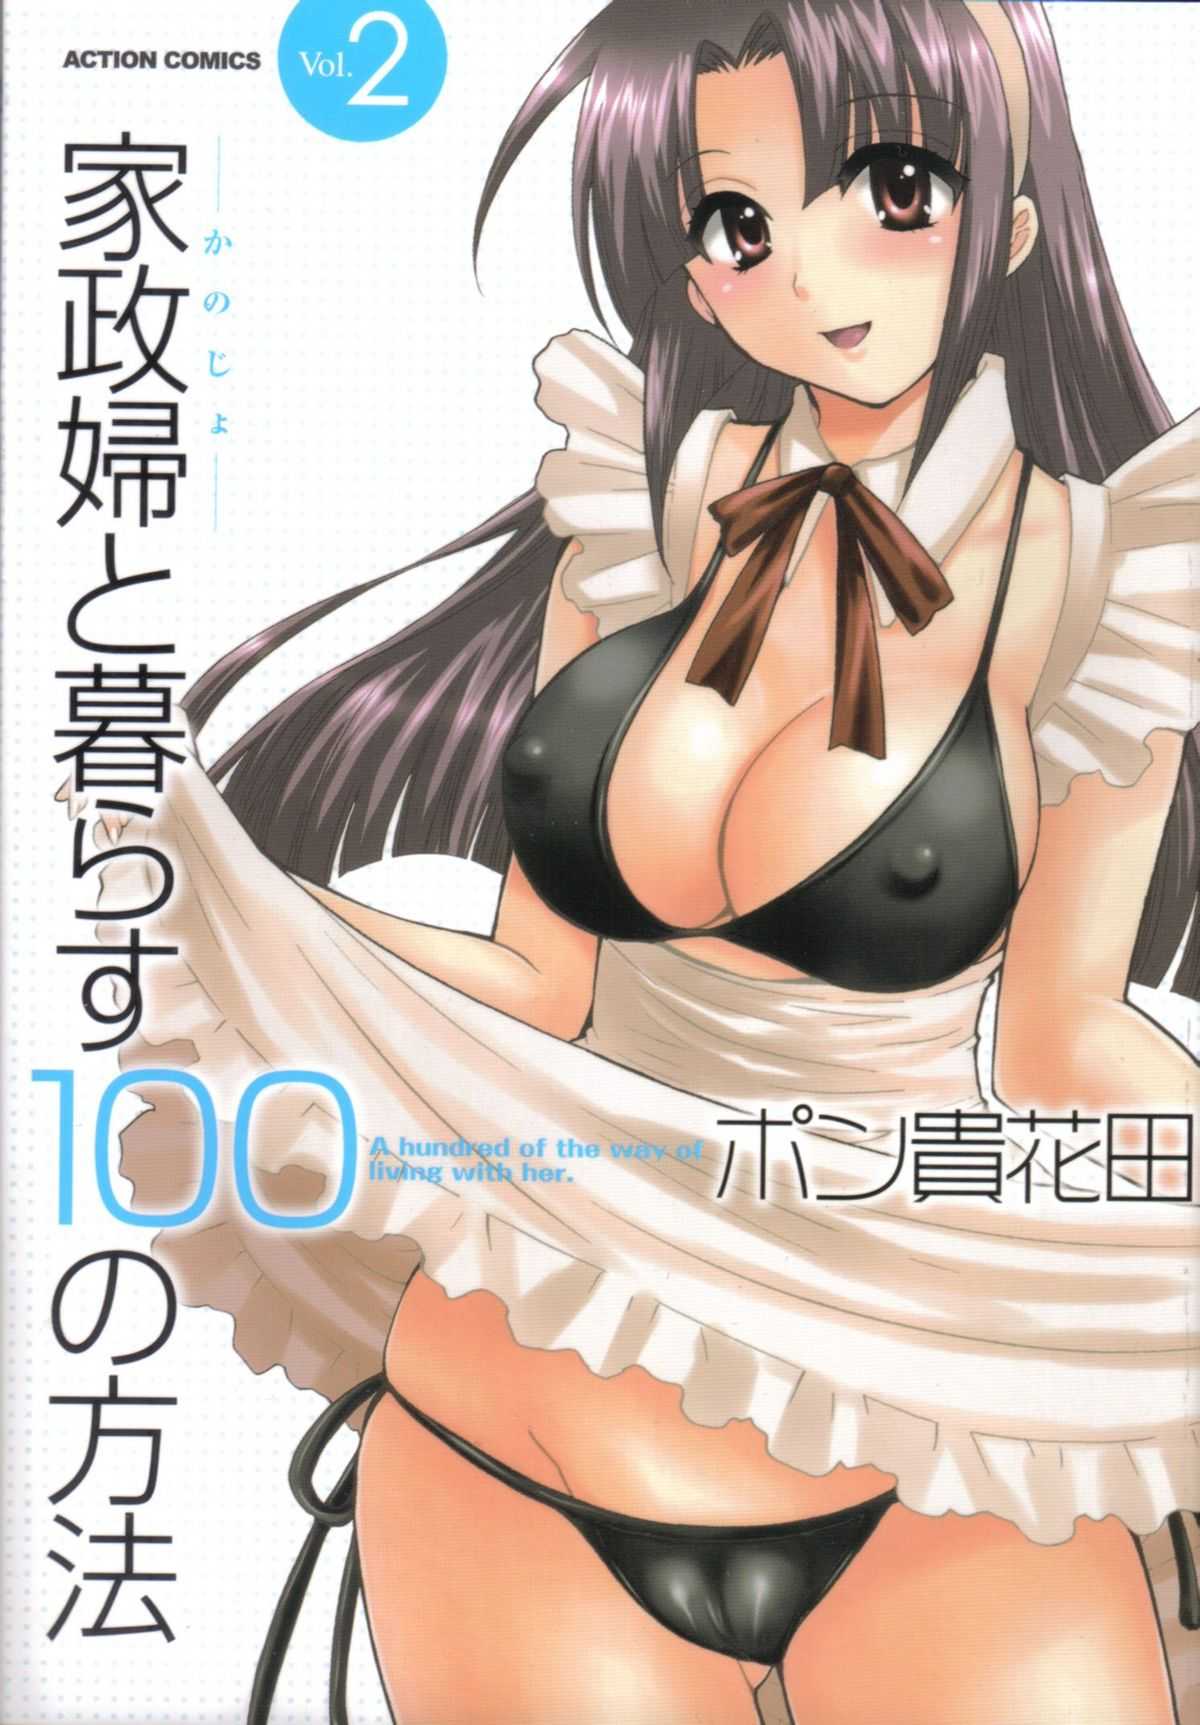 [Pon Takahanada] Kanojo to Kurasu 100 no Houhou Vol.2 